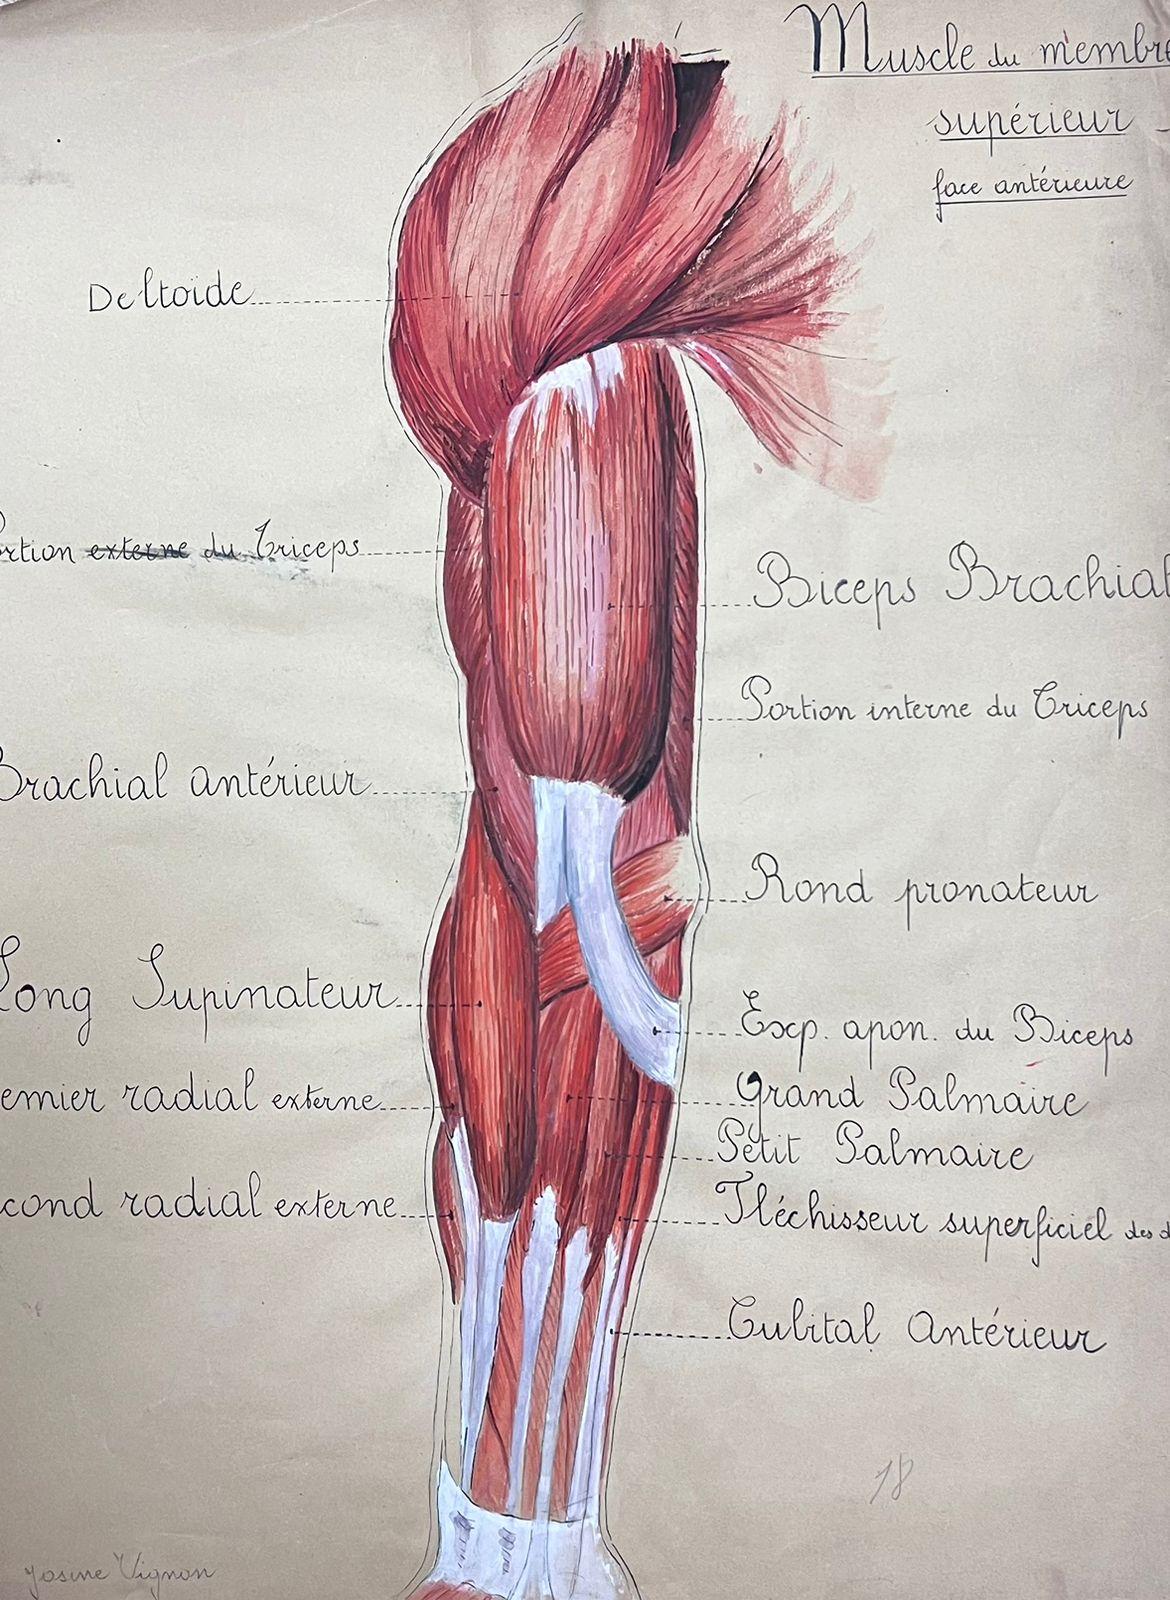 étude d'anatomie du Muscle humain d'origine française